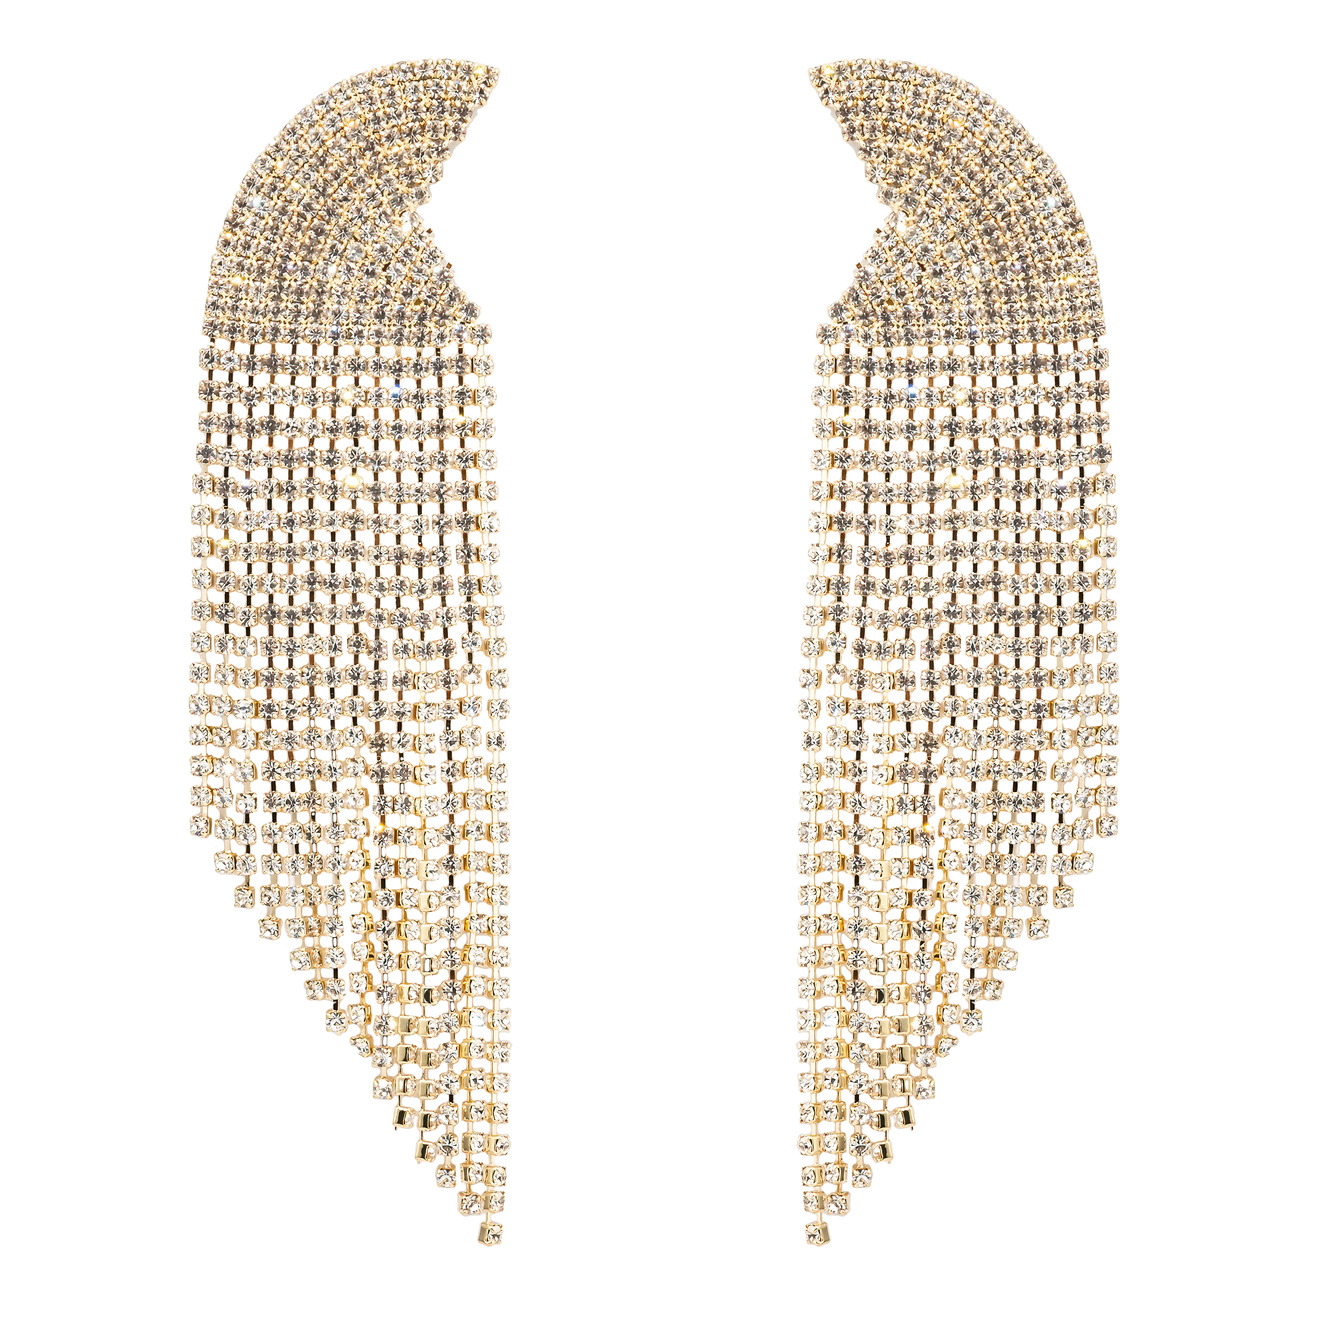 Herald Percy Золотистые серьги-полукруги с кристаллами herald percy золотистые изогнутые серьги с кристаллами